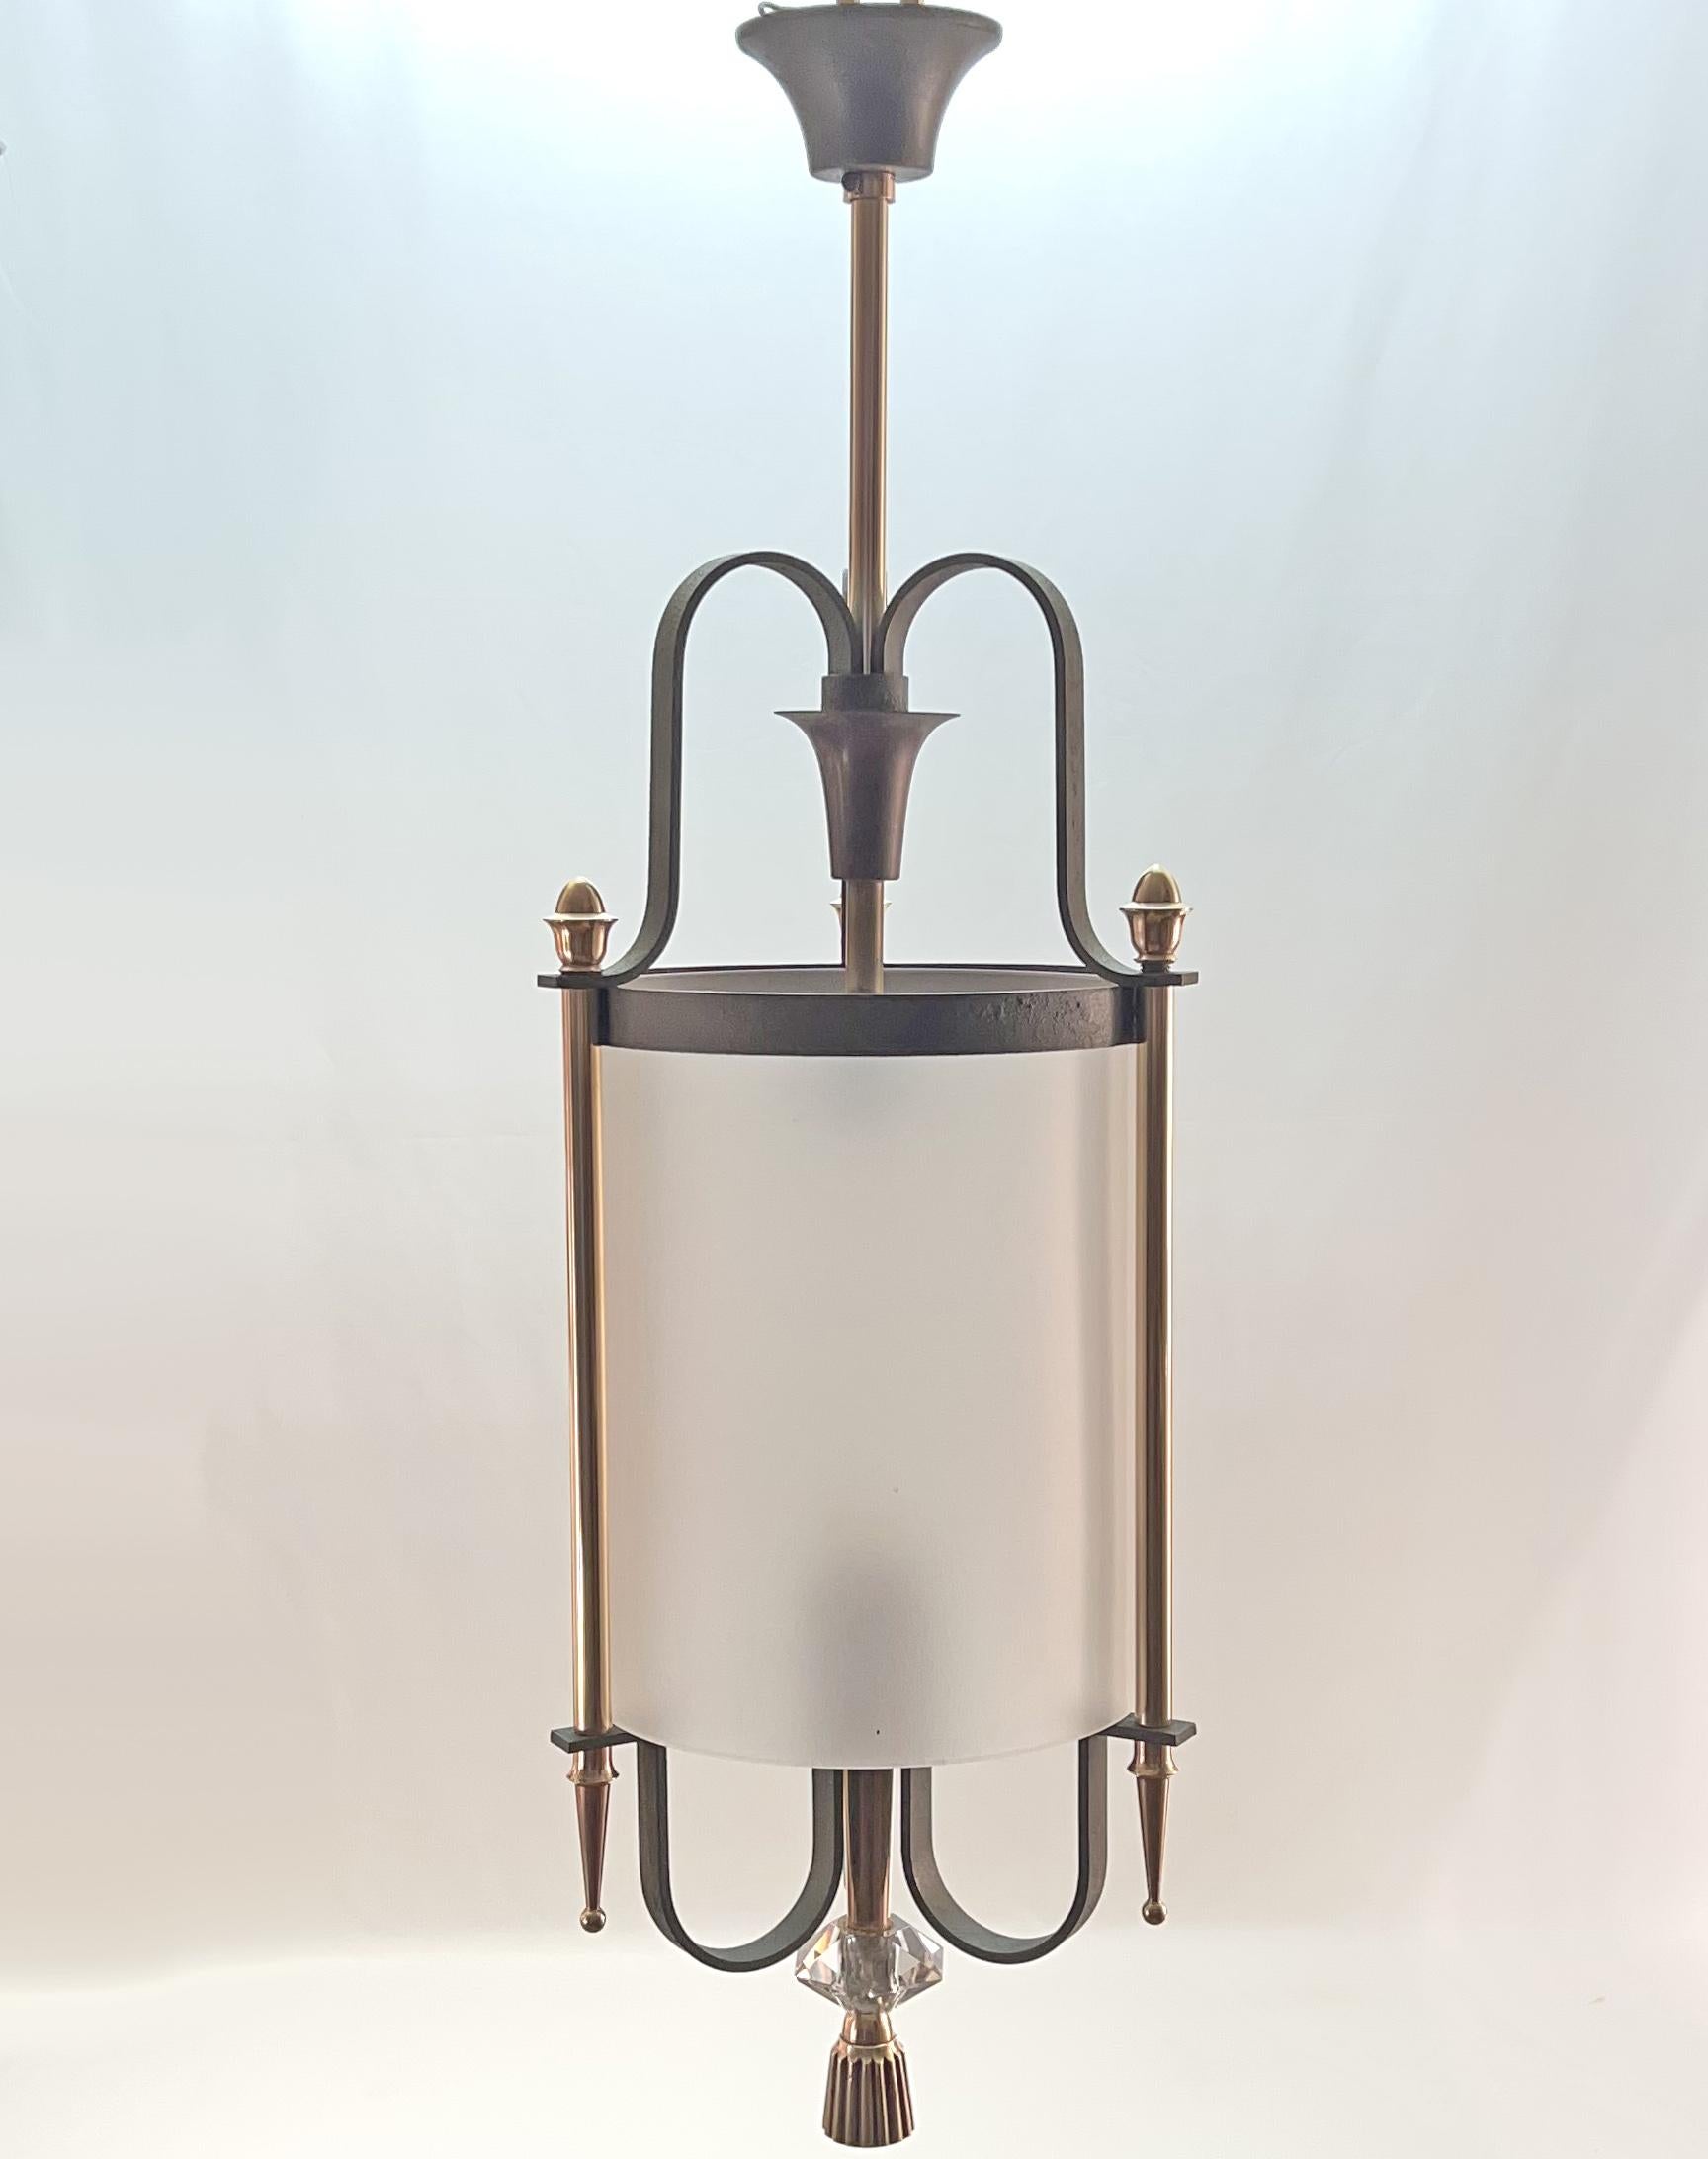 Elegante Laterne um 1940 aus dickem, mattiertem, zylindrischem Glas in einem Rahmen aus Bronze und Schmiedeeisen mit grüner Patina.
Gilbert Poillerat zugeschrieben
Perfekter Zustand der Präsentation und des Betriebs (kürzliche Elektrifizierung)
Sie